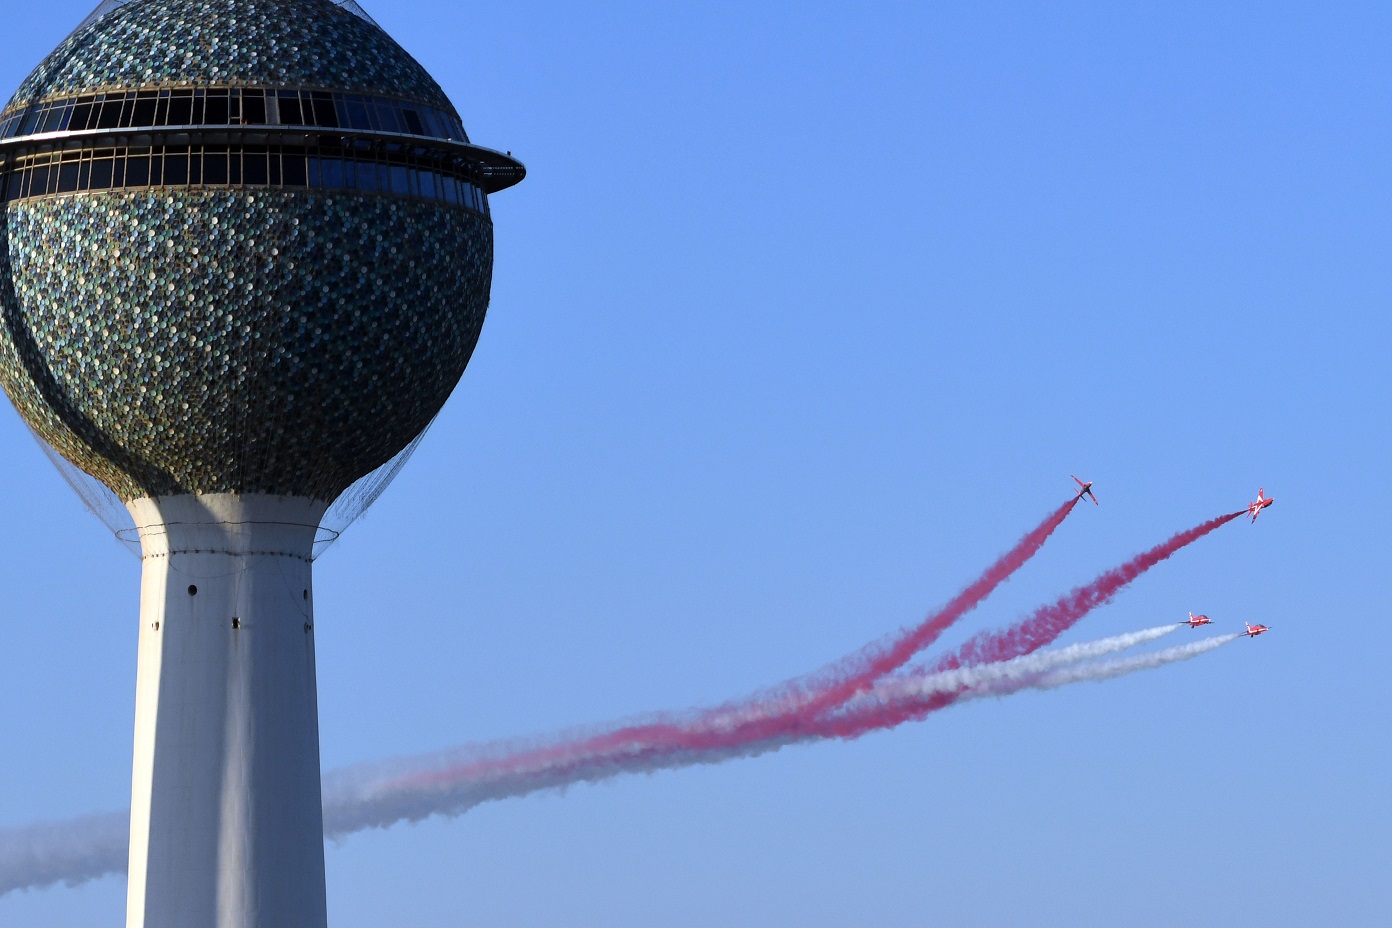 فريق (السهام الحمراء) التابع لسلاح الجو البريطاني ينفذ لوحات (اوكروباتية) جميلة في سماء الكويت